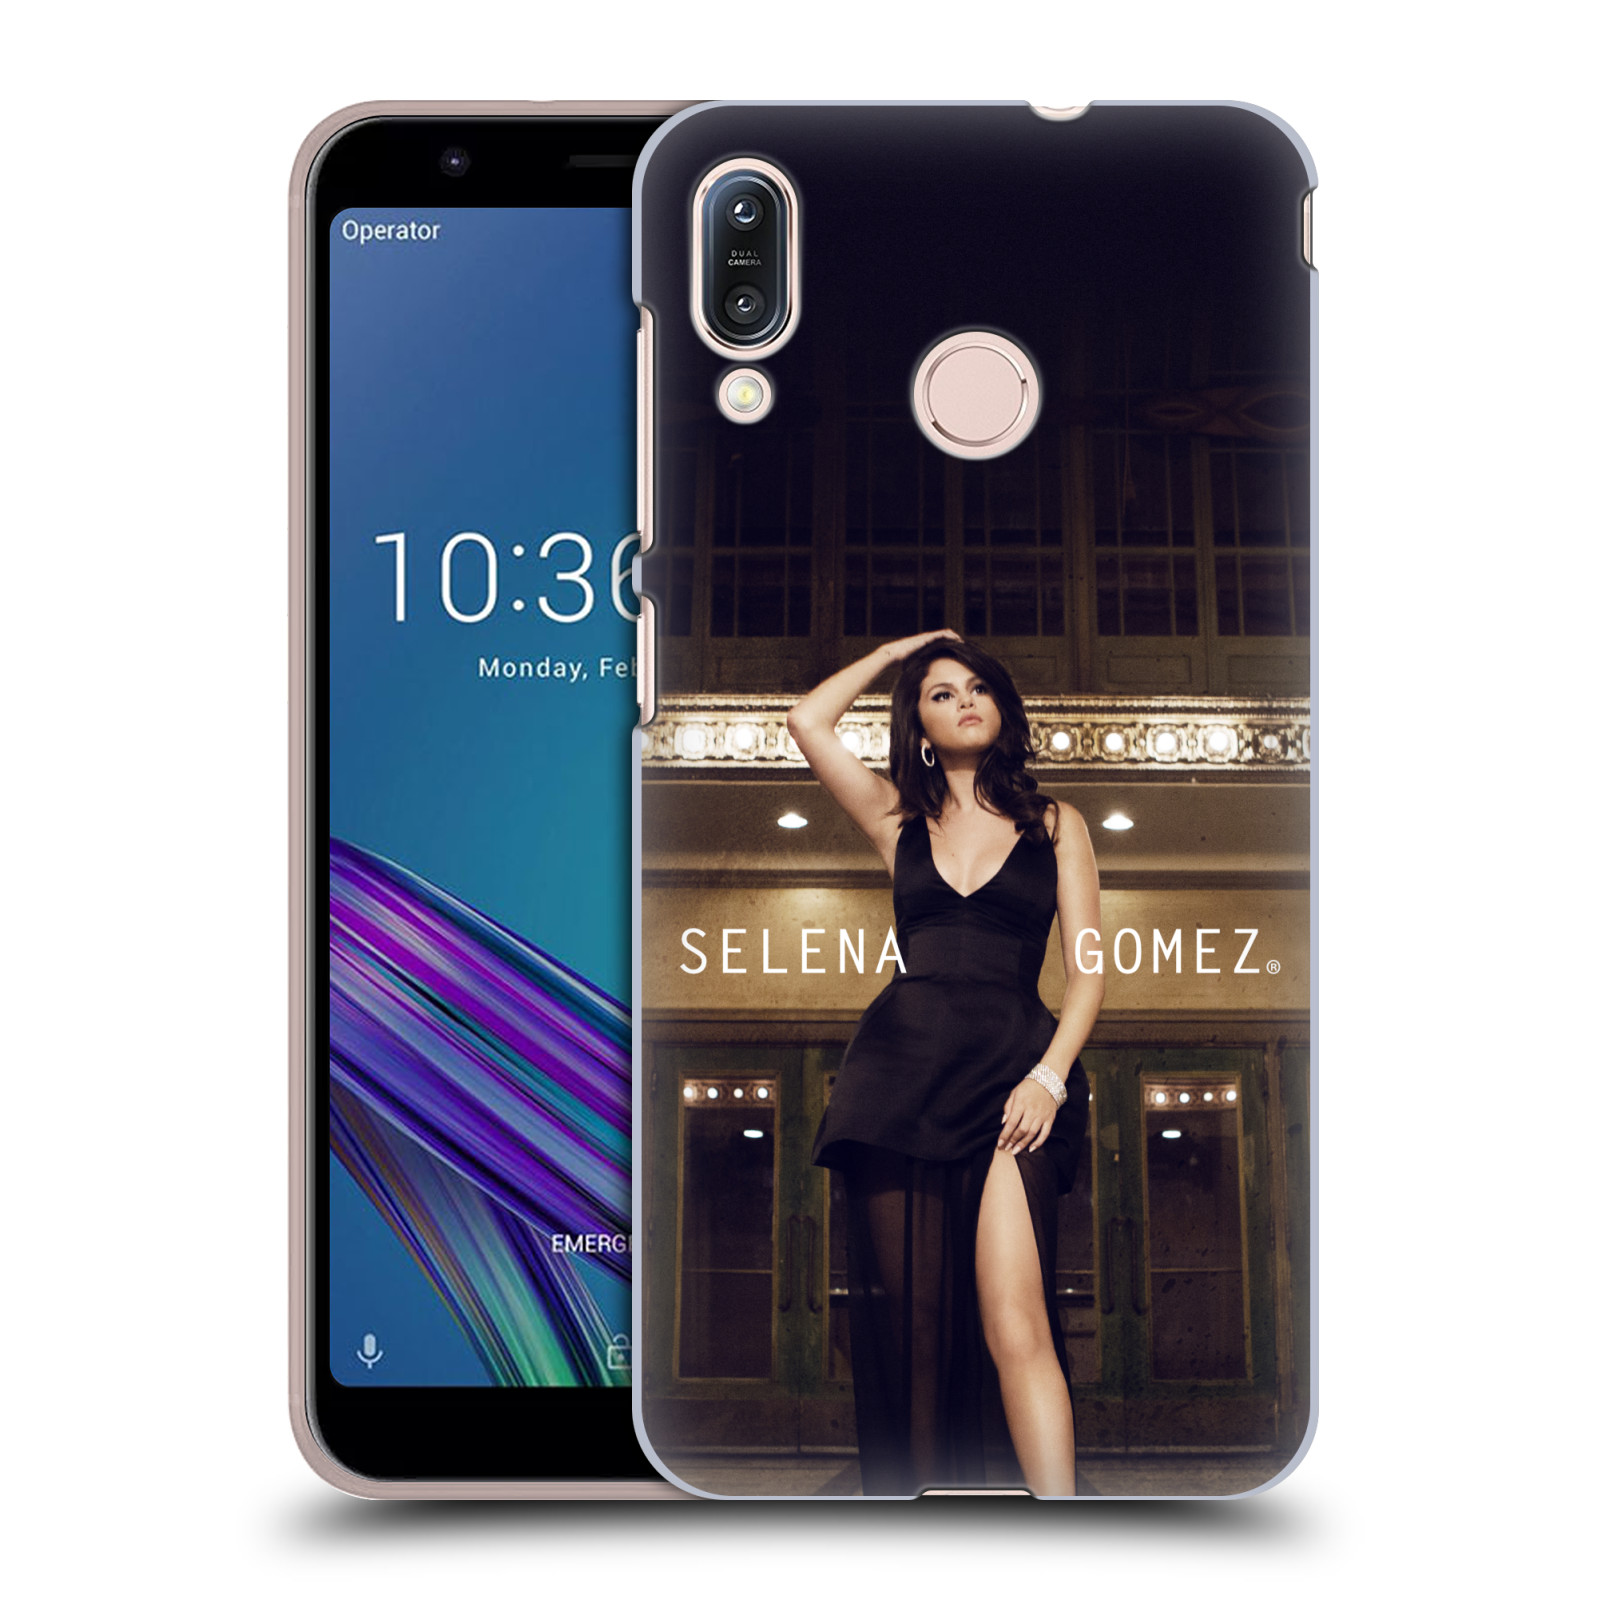 Pouzdro na mobil Asus Zenfone Max M1 (ZB555KL) - HEAD CASE - Zpěvačka Selena Gomez foto Revival Same Old Love